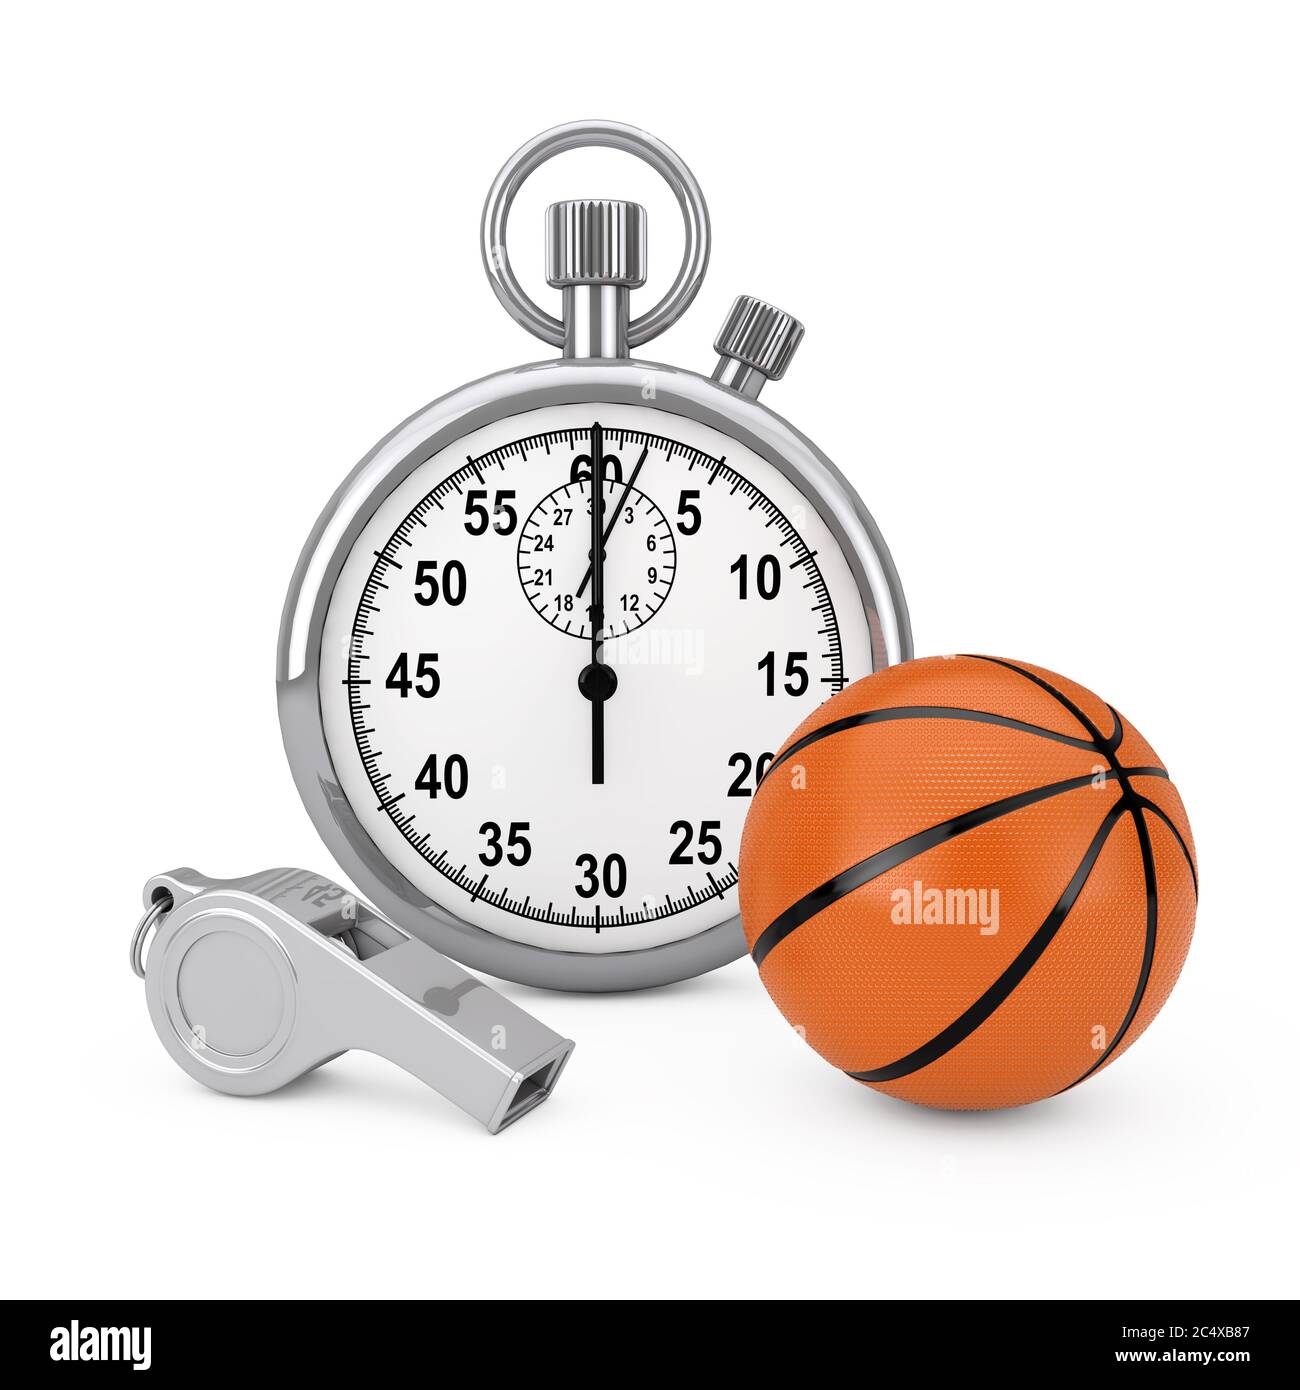 Klassische Metal Coaches Pfeife mit Basketball Ball in der Nähe von Chrome  Stoppuhr auf weißem Hintergrund. 3d-Rendering Stockfotografie - Alamy